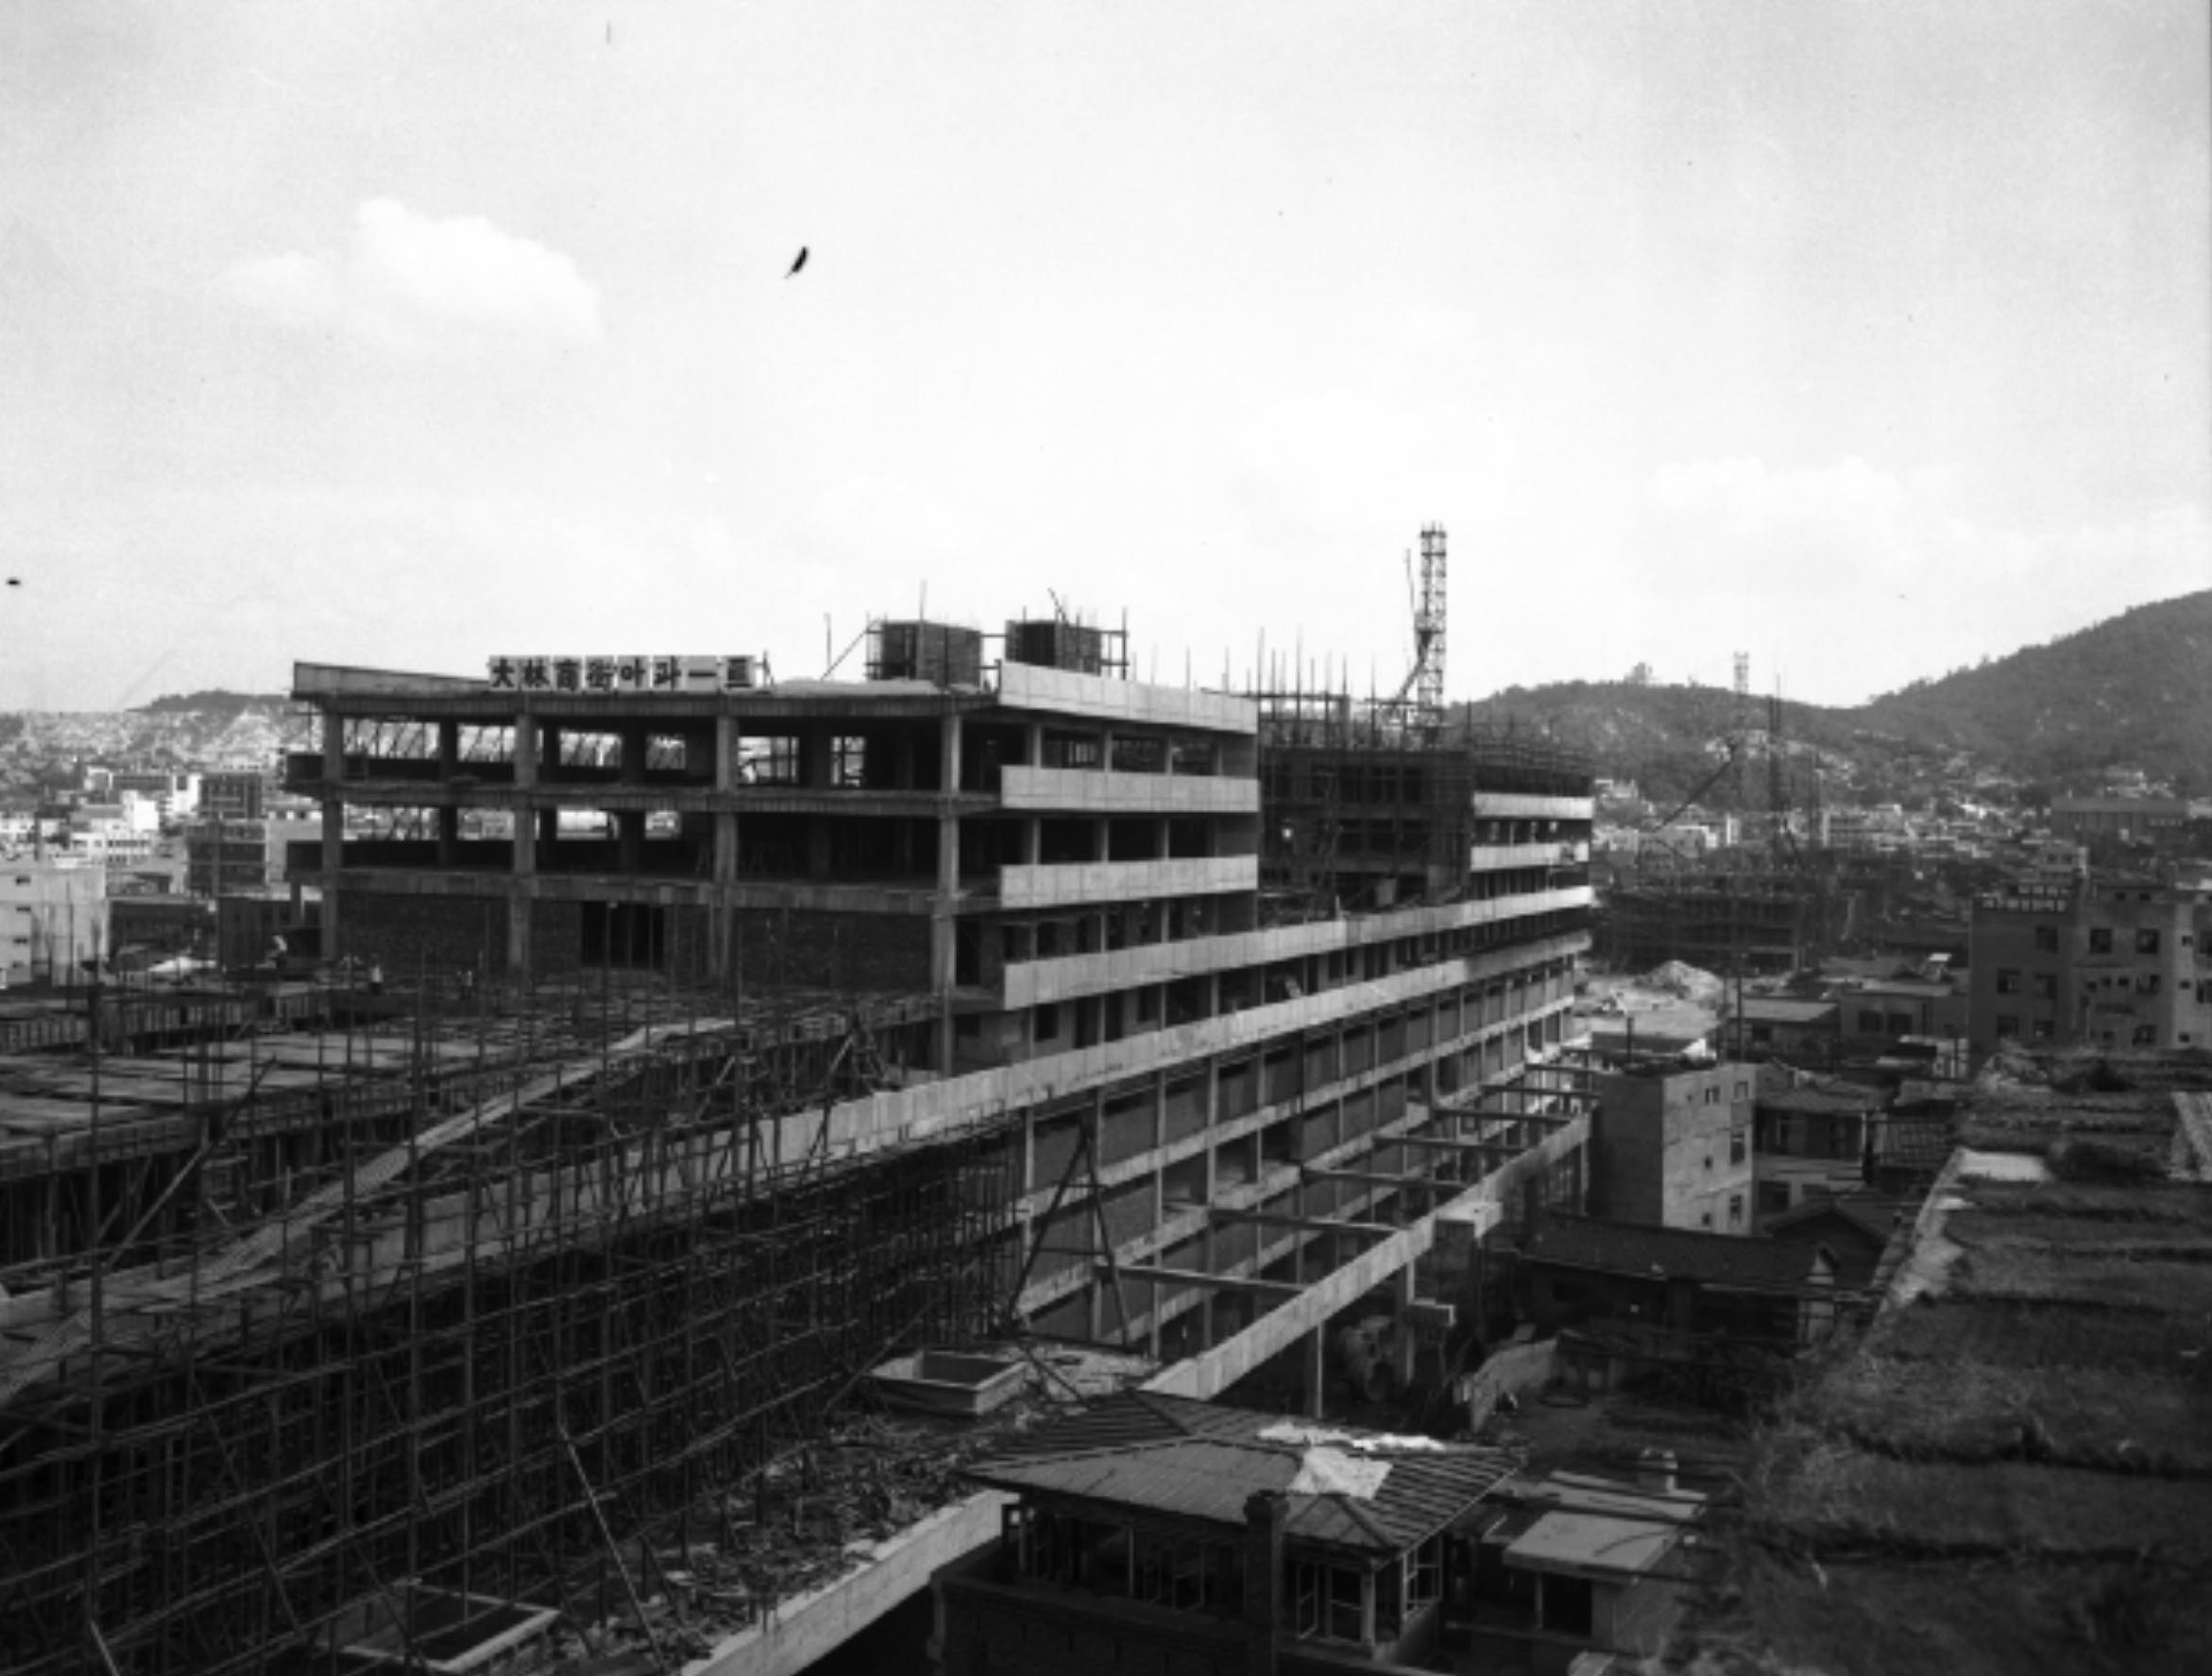 세운상가는 1968년 서울시 종로구에서 만든 약 1km 길이의 대한민국 최초의 주상복합 건물이자 초대형 상가군이다.  '세계의 기운이 이곳으로 모이라' 라는 뜻을 담은 세운상가는 일종의 입체도시를 만들고자 했던 거창한 계획에서 출발하였으나 각 건설사별로 건물을 따로 짓는 바람에 그 계획은 사실상 무산되었다. 완공된 세운상가군은 아파트도 흔치 않은 당시 최고의 시설을 자랑했기 때문에 큰 인기를 끌었으나 1980년대를 거치면서 점점 슬럼화되기 시작했고, 지금은 애물단지 수준으로 전락했다. 한편 세운상가는 용산 전자상가(1987년)가 들어서기 이전까지 각종 전자제품과 컴퓨터 및 컴퓨터 부품 등을 취급하던 곳으로 유명했었다. /r/n/r/n* 서울 도시계획 이야기 1(손정목 저, 한울, 2003)/r/n* 나무위키(https://namu.wiki)